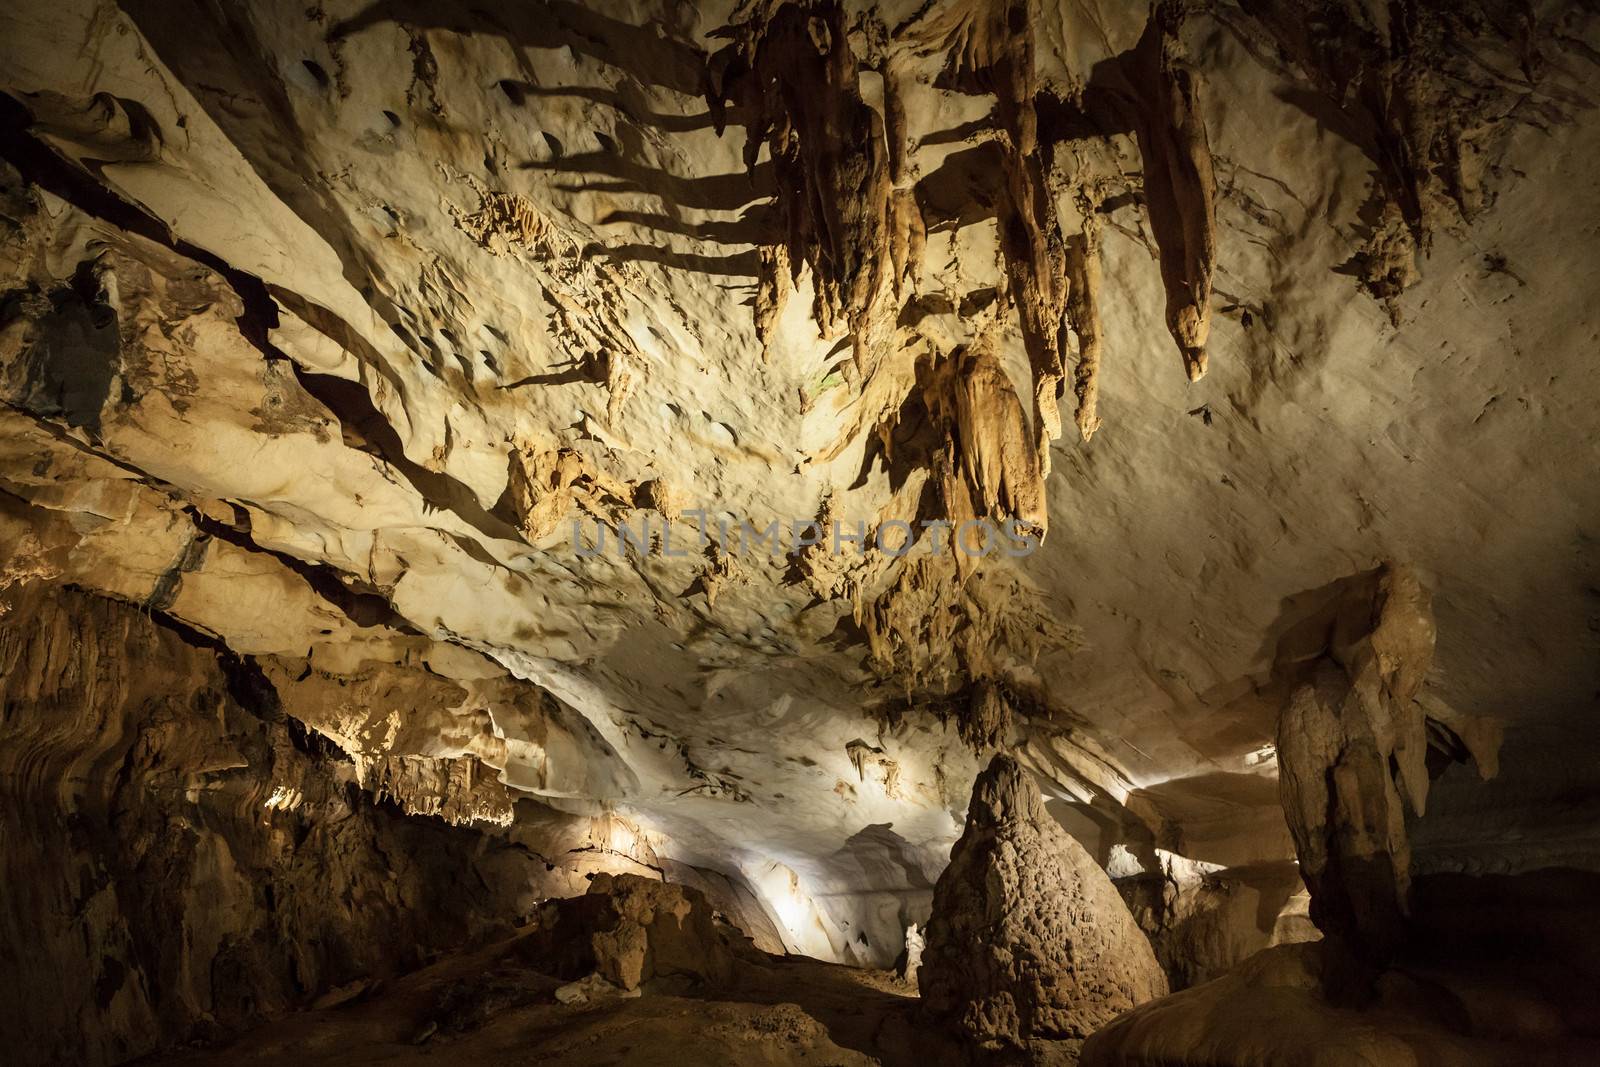 Limestone cave at Gunung Mulu national park by juhku